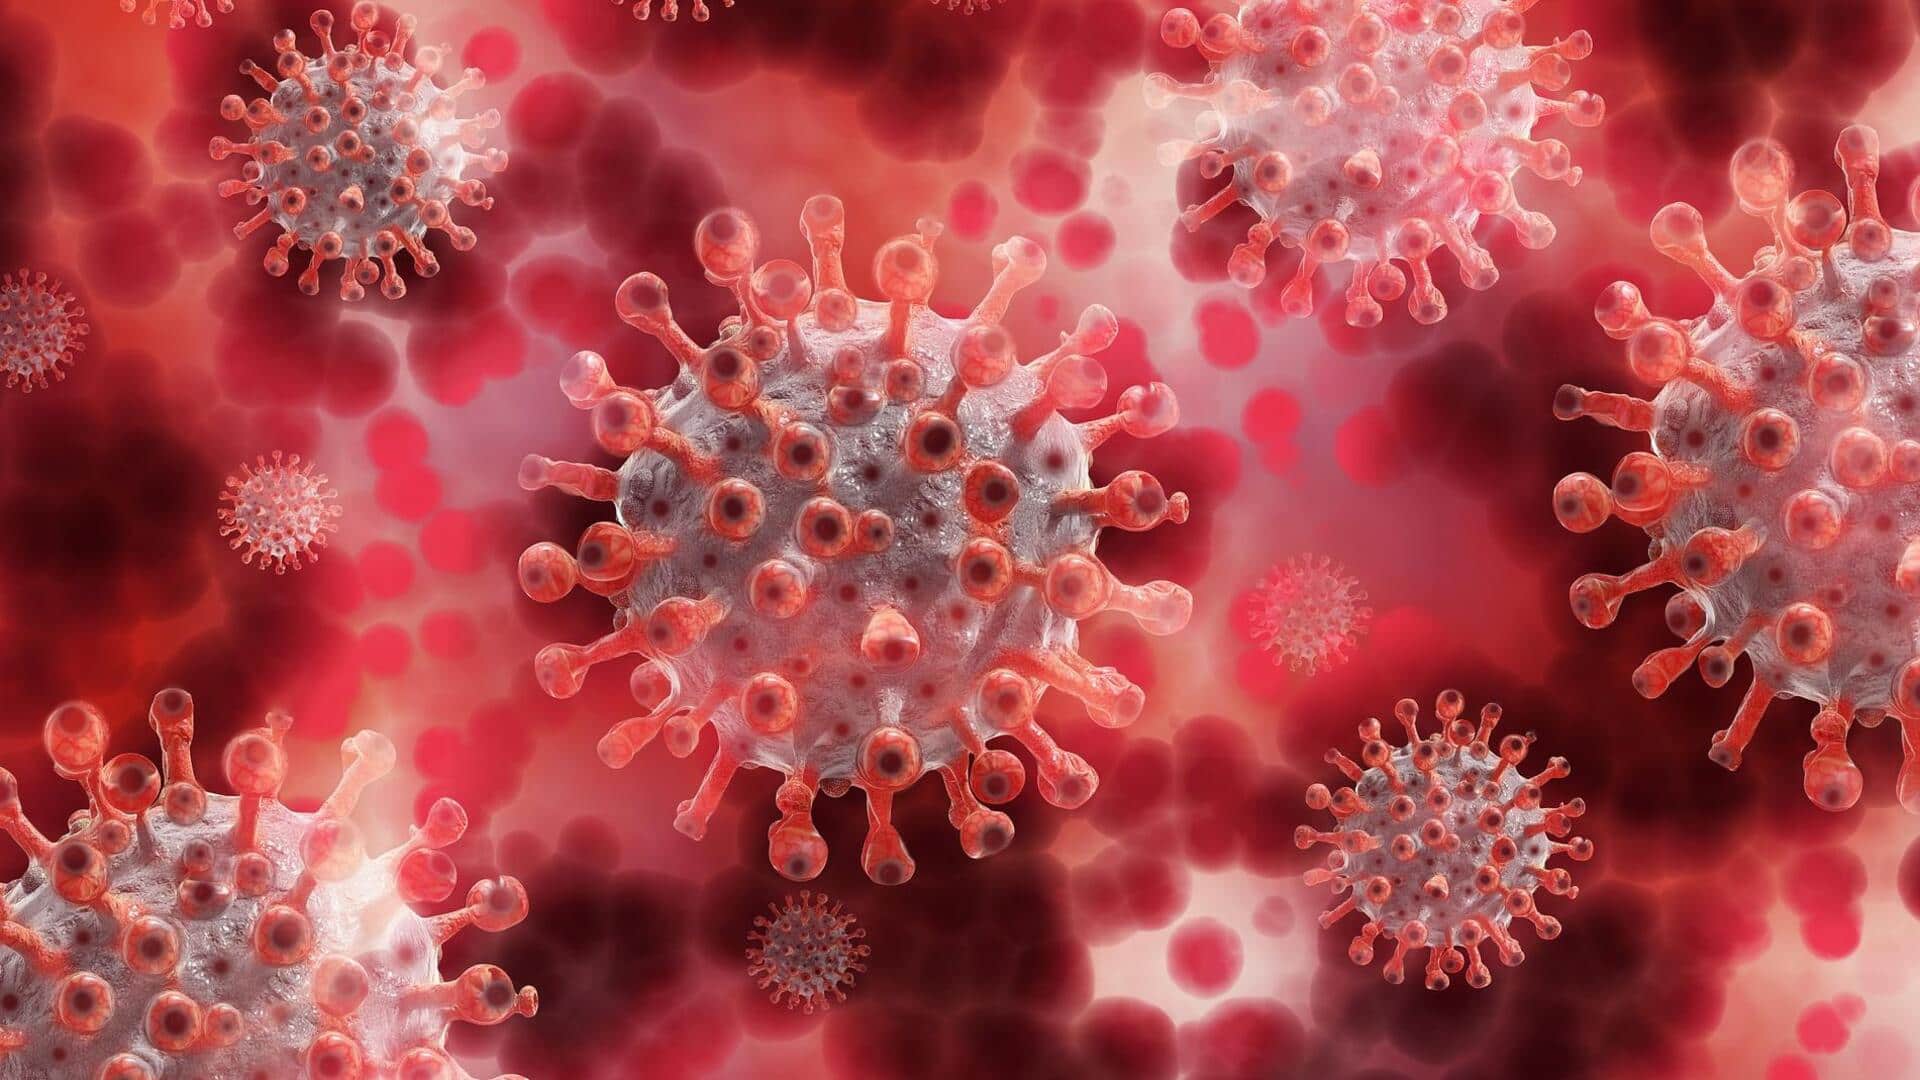 कोरोना वायरस: देश में दैनिक मामलों में वृद्धि जारी, बीते दिन मिले 10,158 नए मरीज